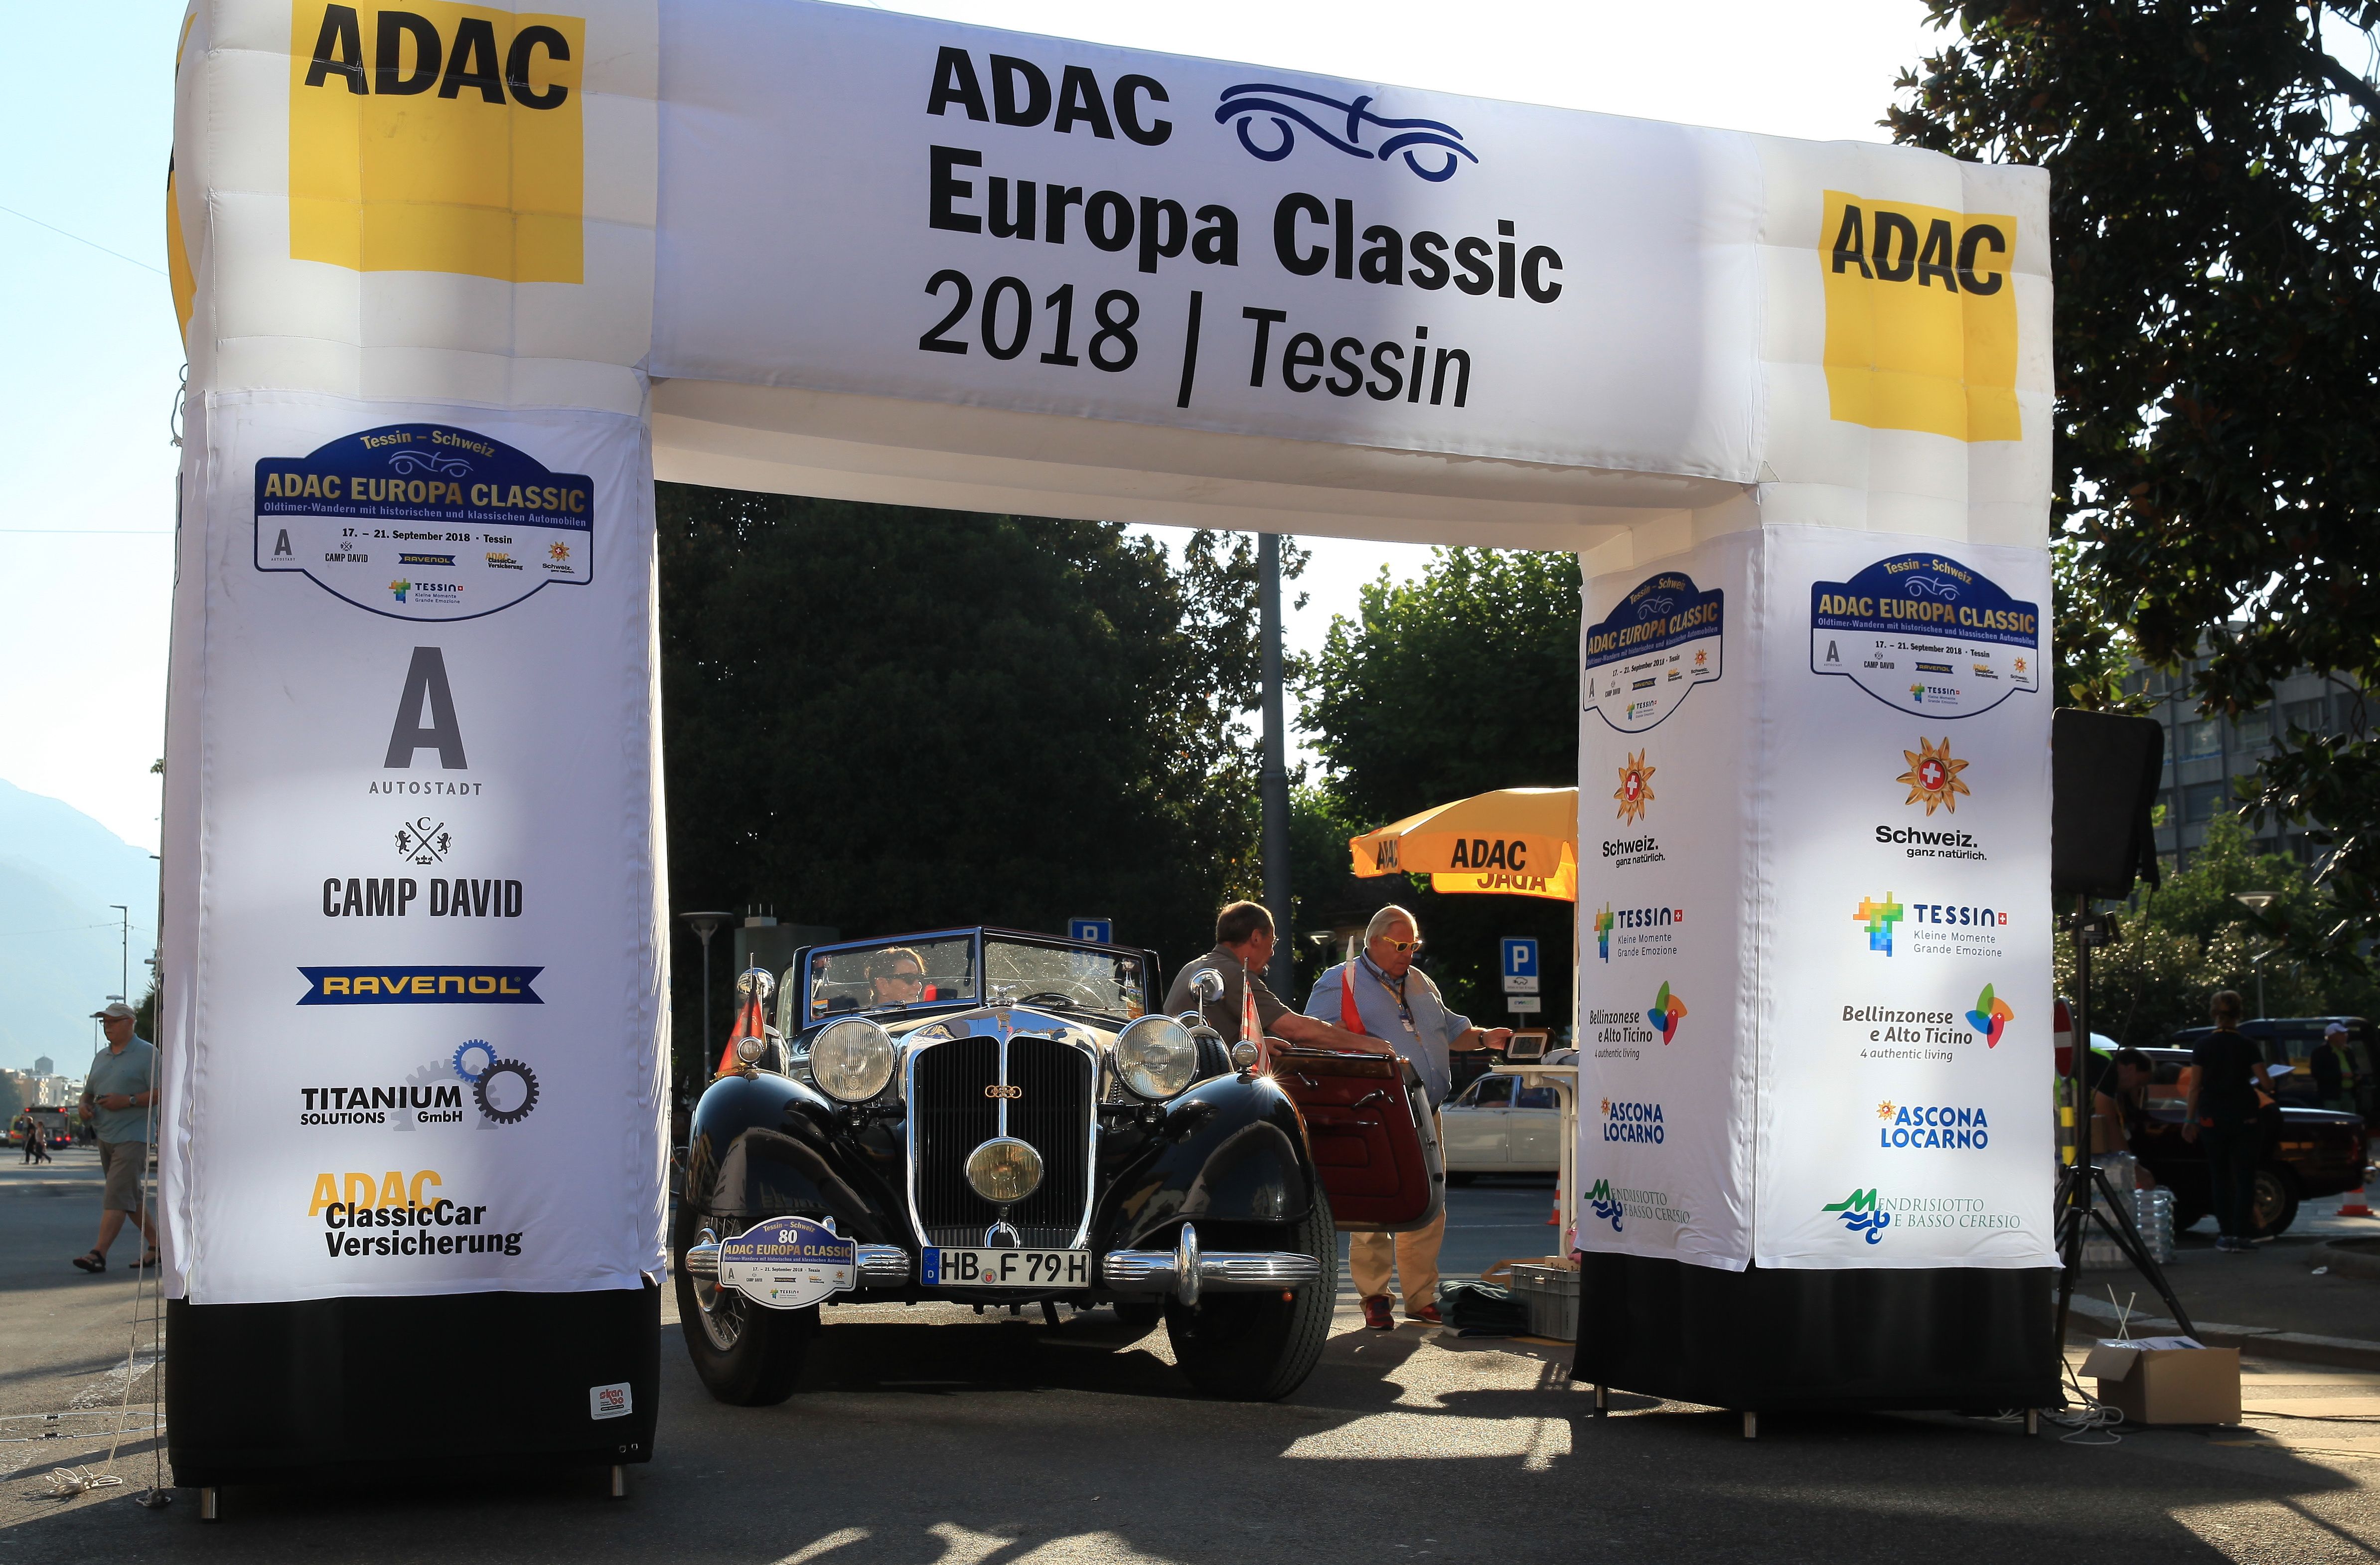 ADAC Europa Classic 2018